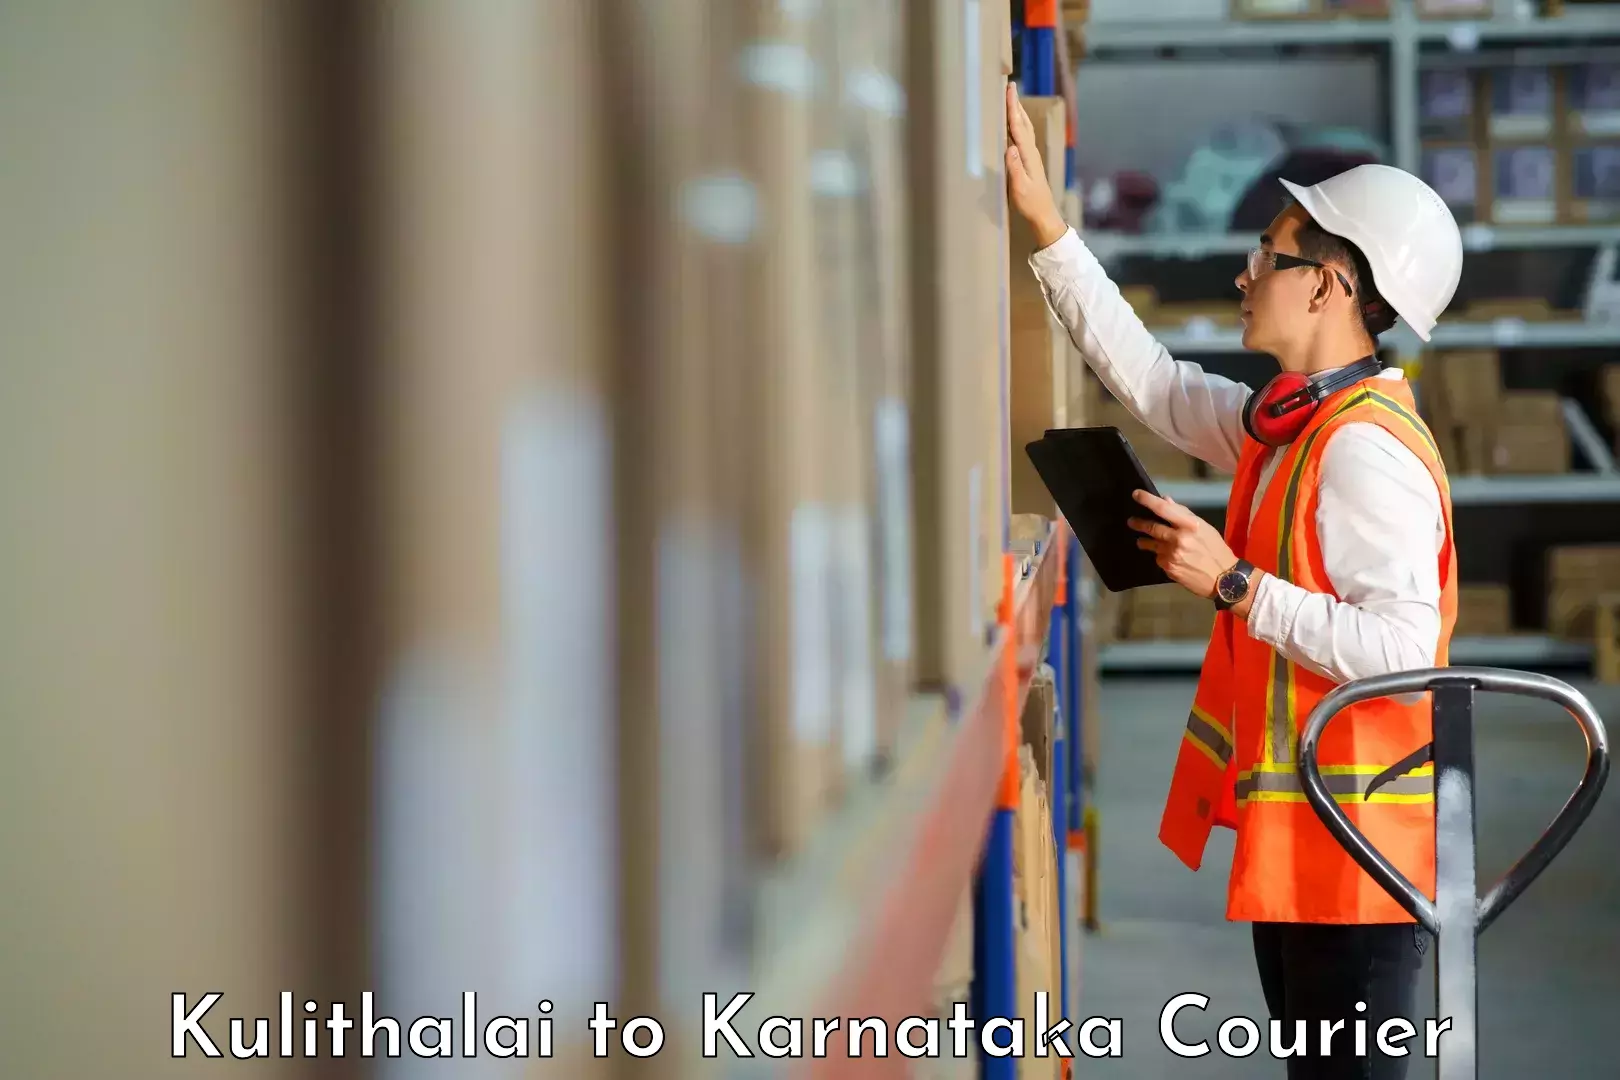 Quick courier services Kulithalai to Karnataka